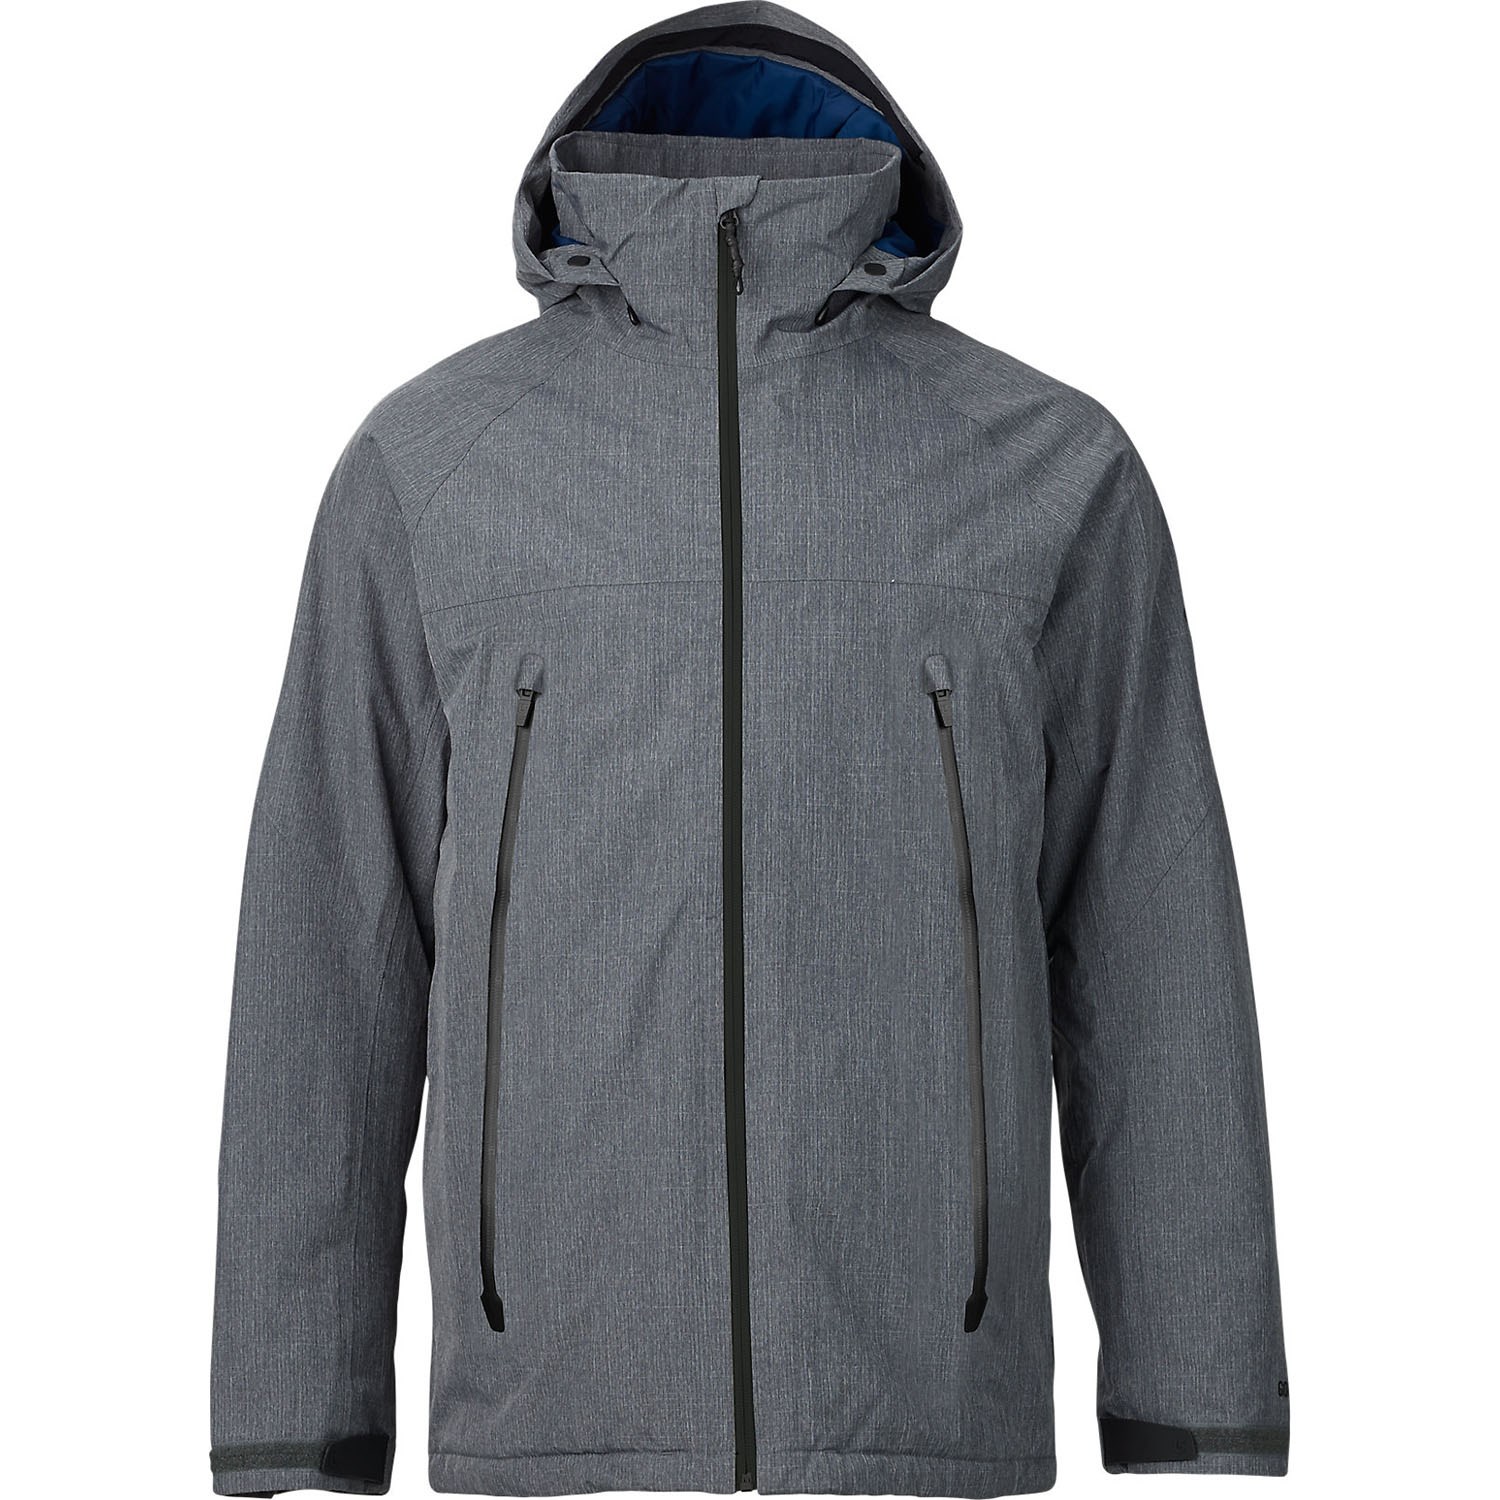 Bugaboo II Fleece Interchange Jacket - The Benchmark Outdoor Outfitters